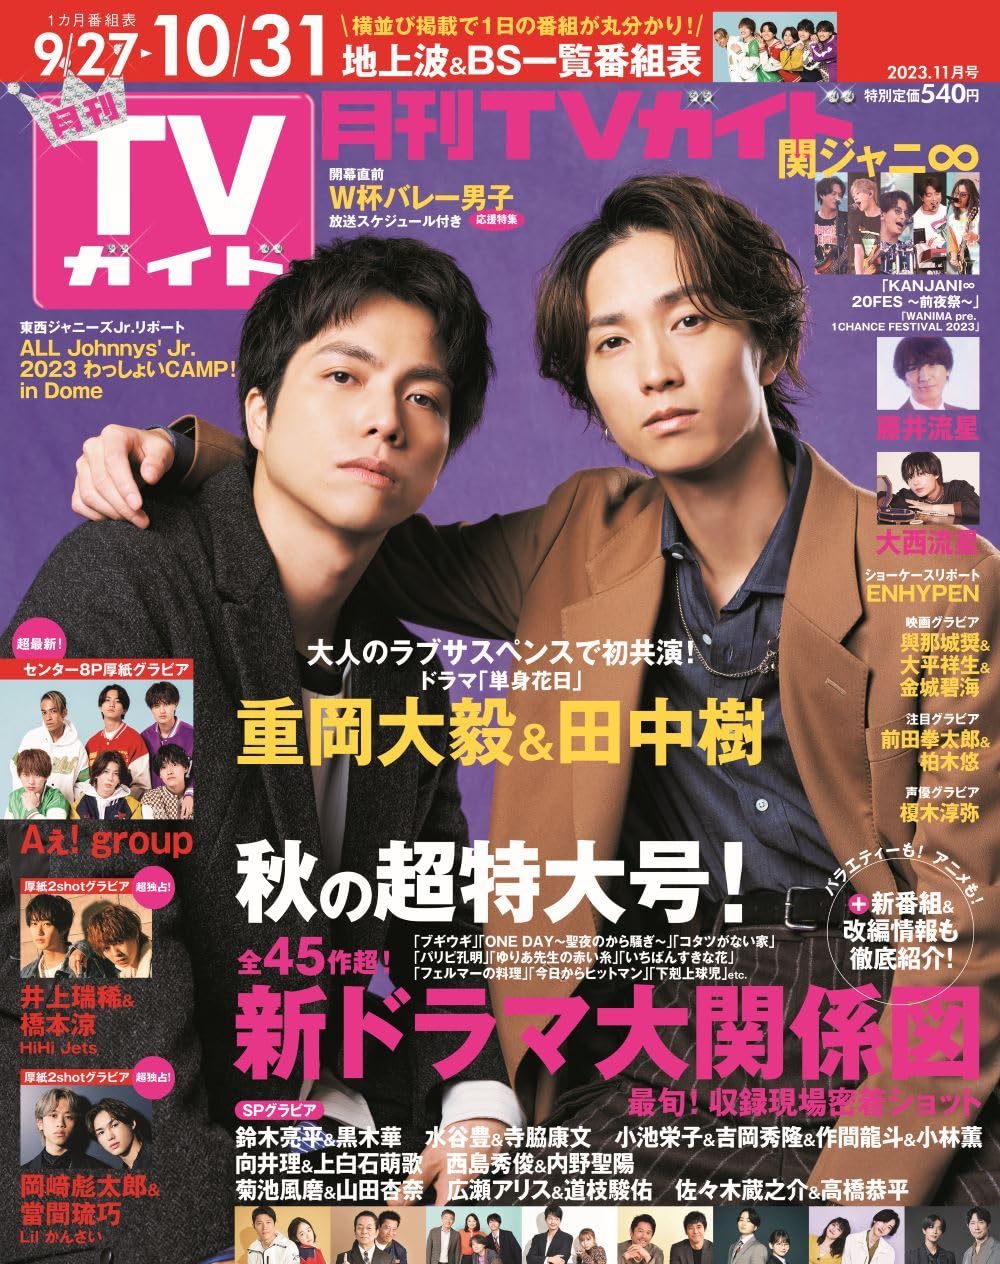 月刊TVガイド關東版 2023年 11月號